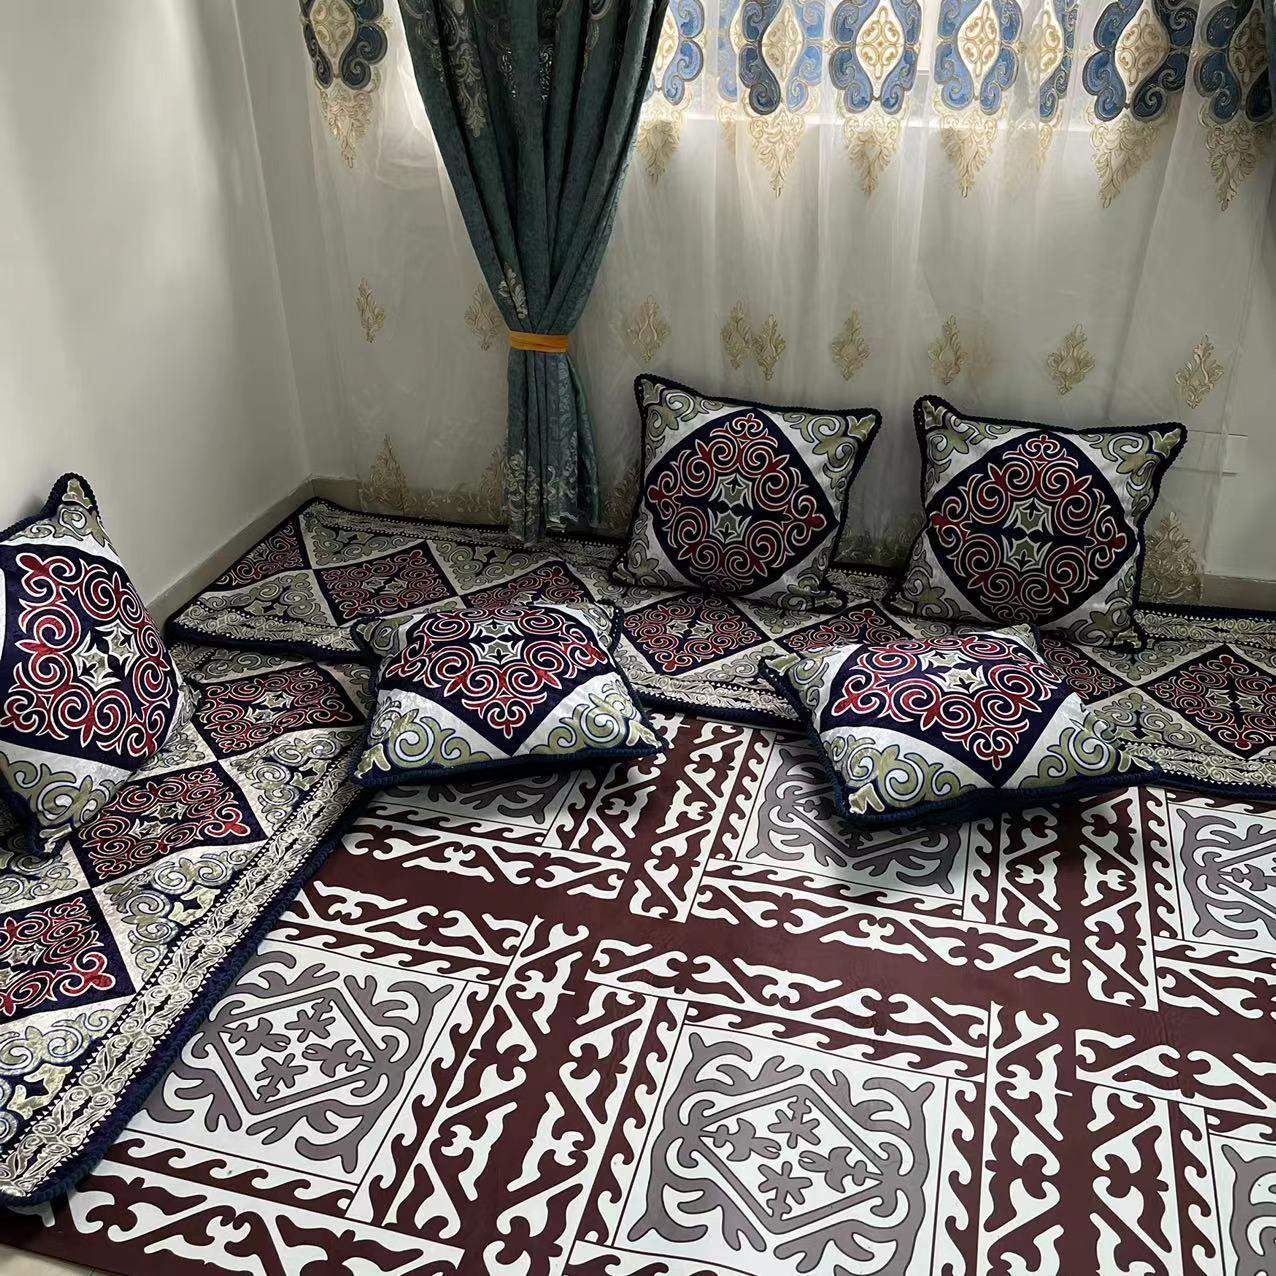 浩娜新疆哈萨克装饰褥子沙发民族风印花单面金丝绒抱枕套不含芯 居家布艺 抱枕被 原图主图